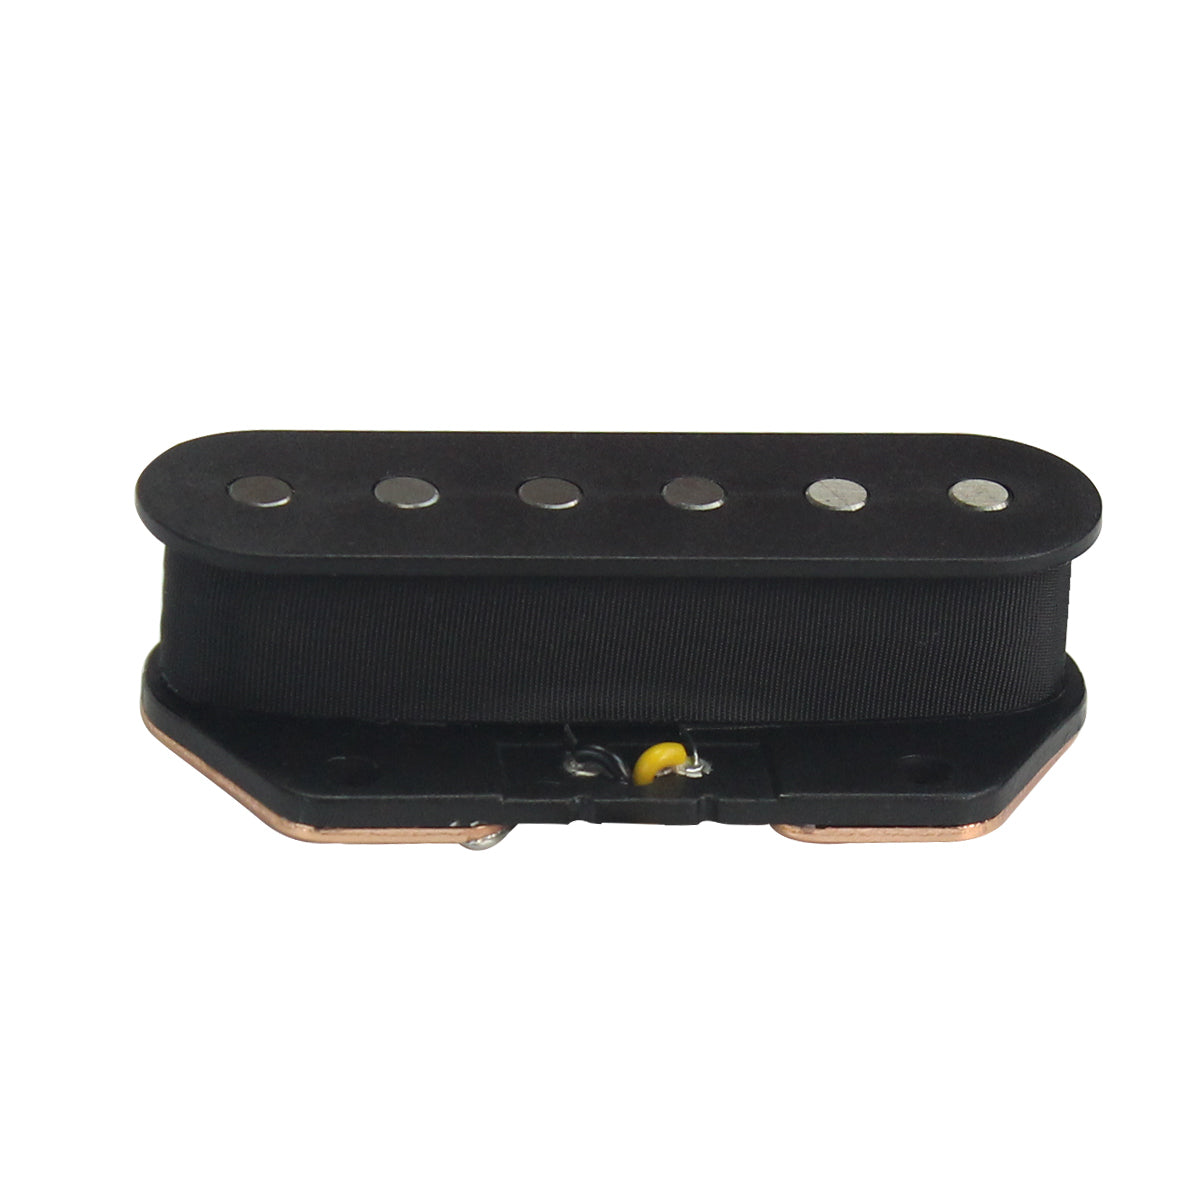 FLEOR Alnico 5 Guitar Pickup Bridge For Telecaster Guitar | iknmusic